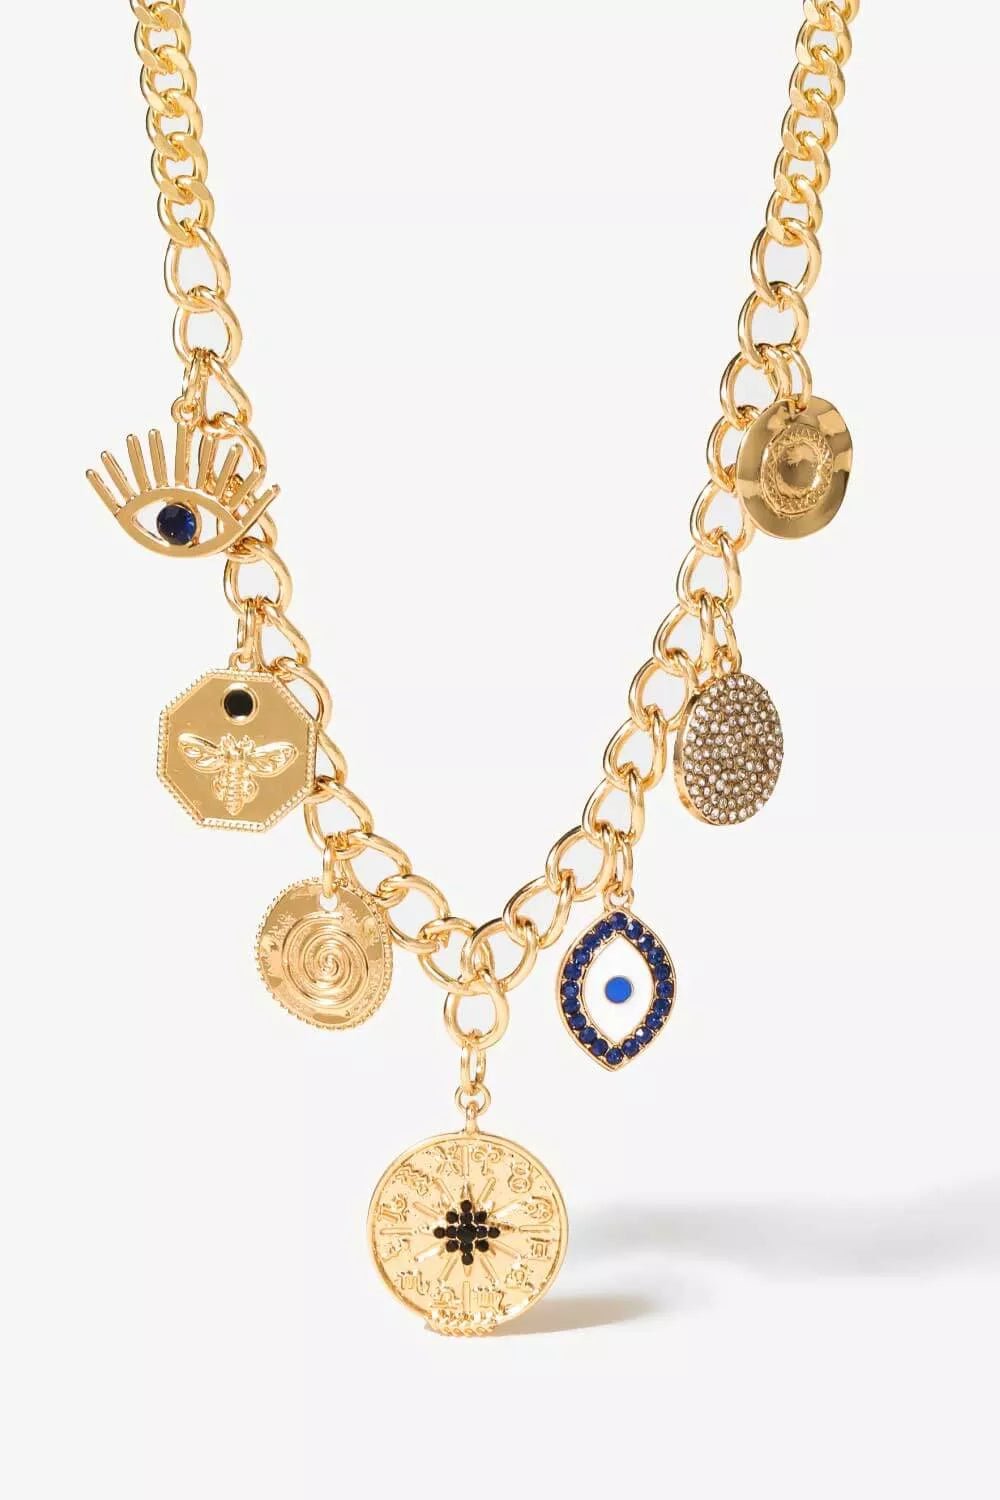 Multi-Pendant Chain Necklace - London's Closet Boutique